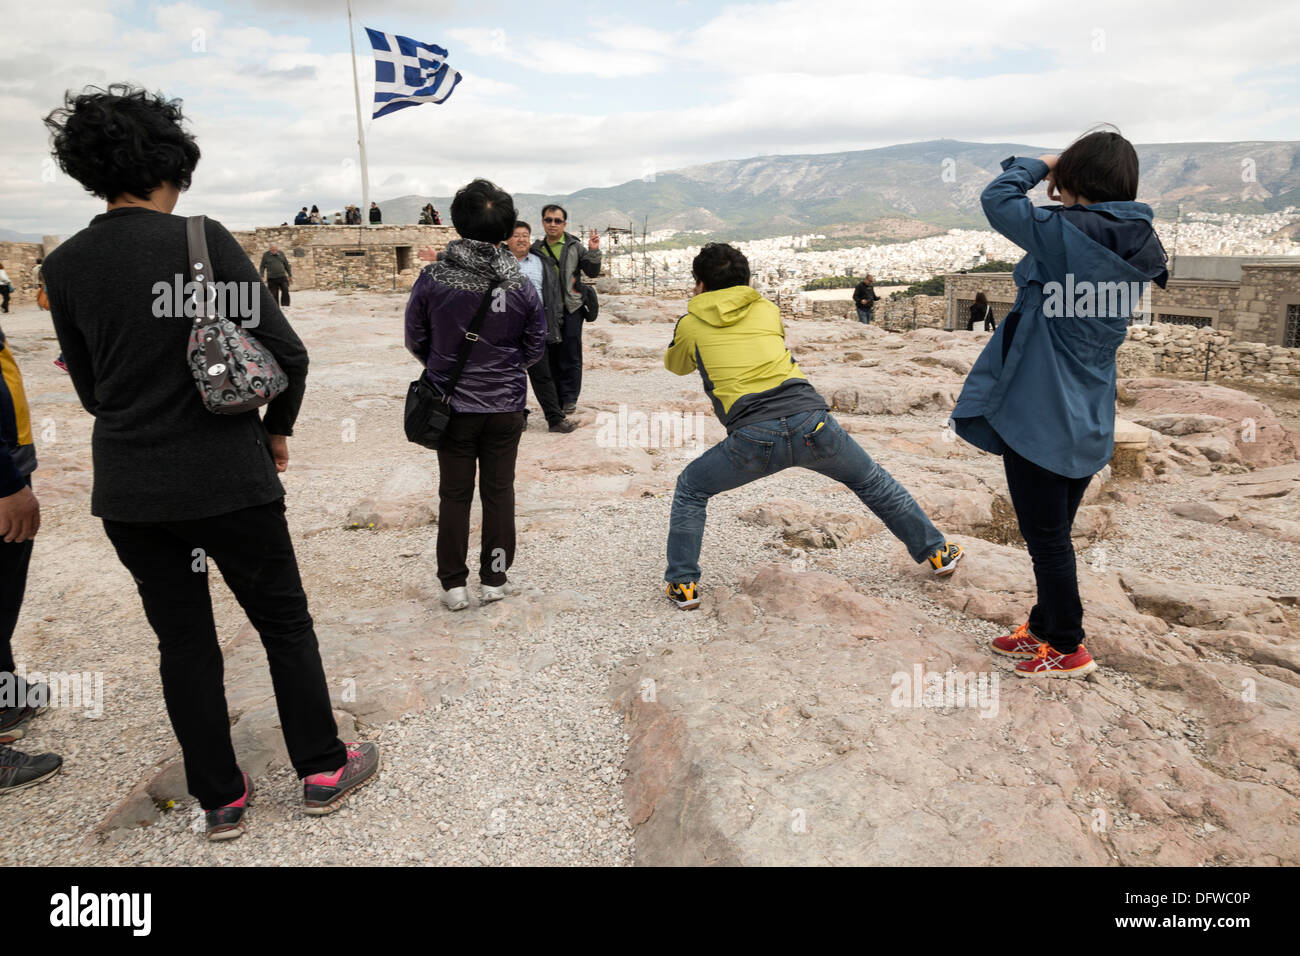 Les touristes de photographier les uns les autres sur l'Acropole. Athènes, Grèce, le 4 octobre 2013 Banque D'Images